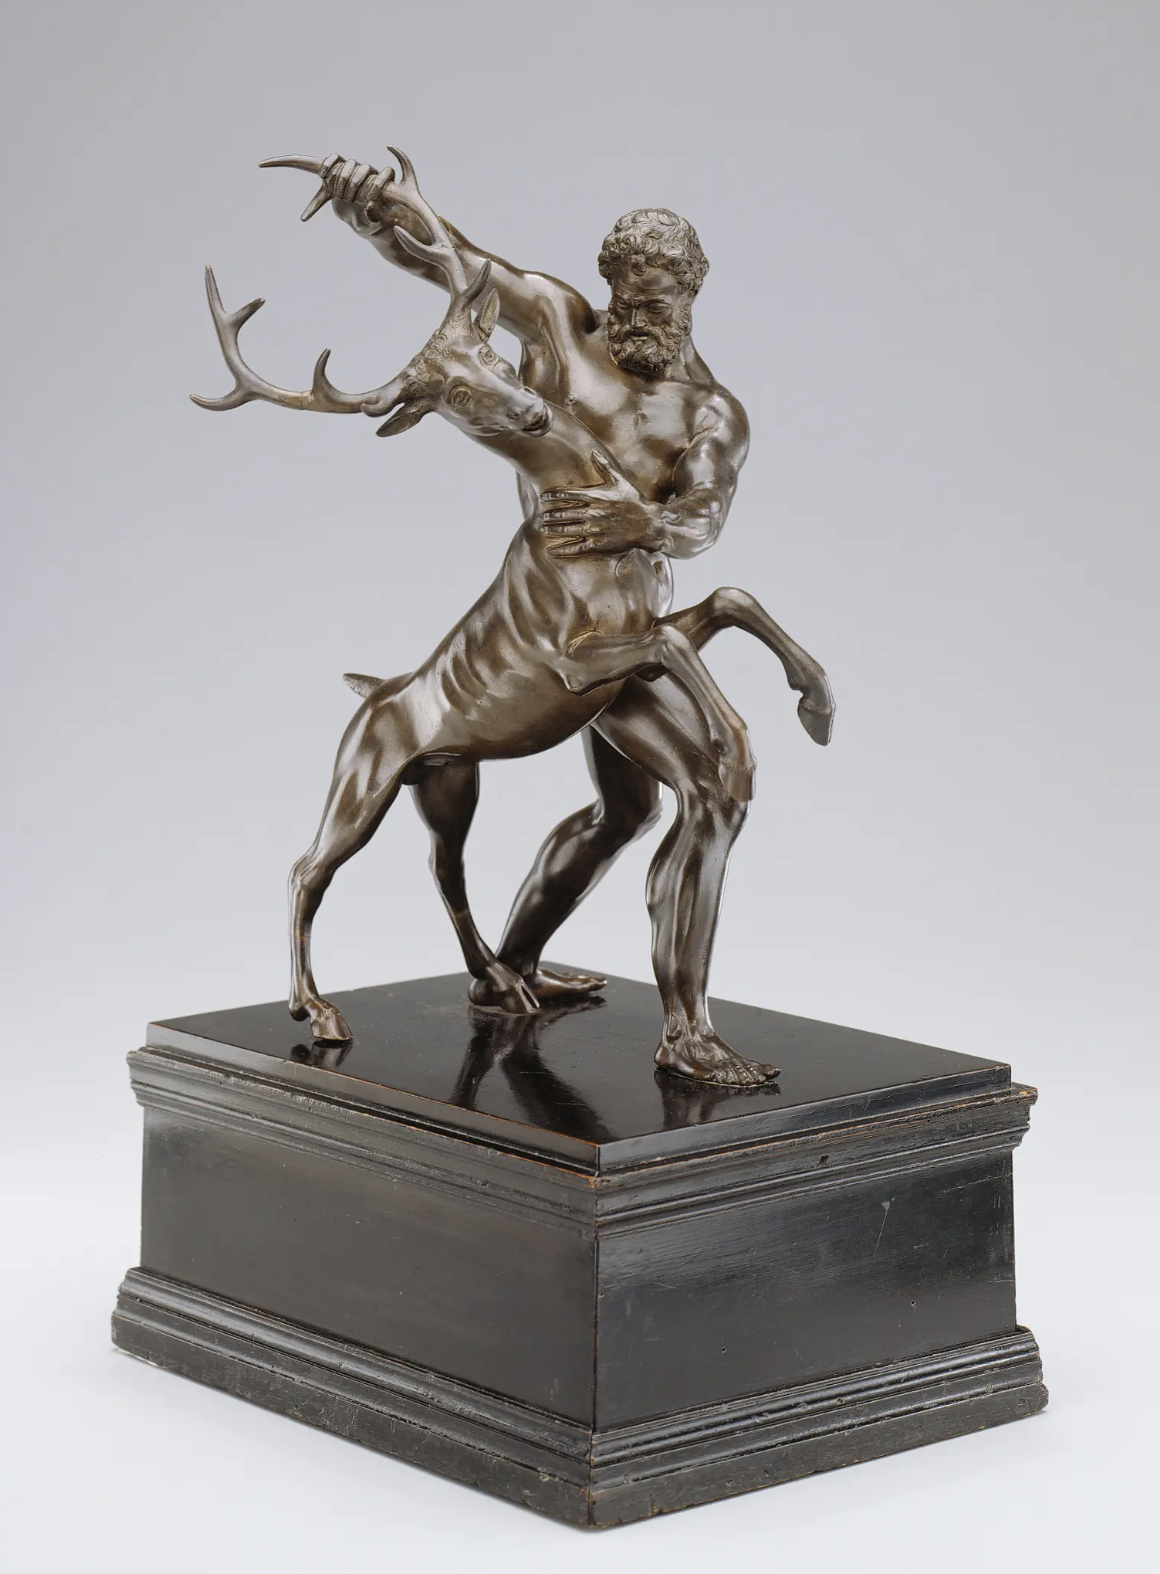 Tác phẩm điêu khắc bằng đồng “Hercules and the Arcadian Stag” (Hercules và Hươu Arcadian) đầu thế kỷ 17, của nghệ sỹ Antonio Susini, phỏng theo tác phẩm của nghệ sỹ Giovanni da Balogna. Quà tặng của bà Ralph Harman Booth, Viện Nghệ thuật Detroit. (Ảnh: Tư liệu công cộng)